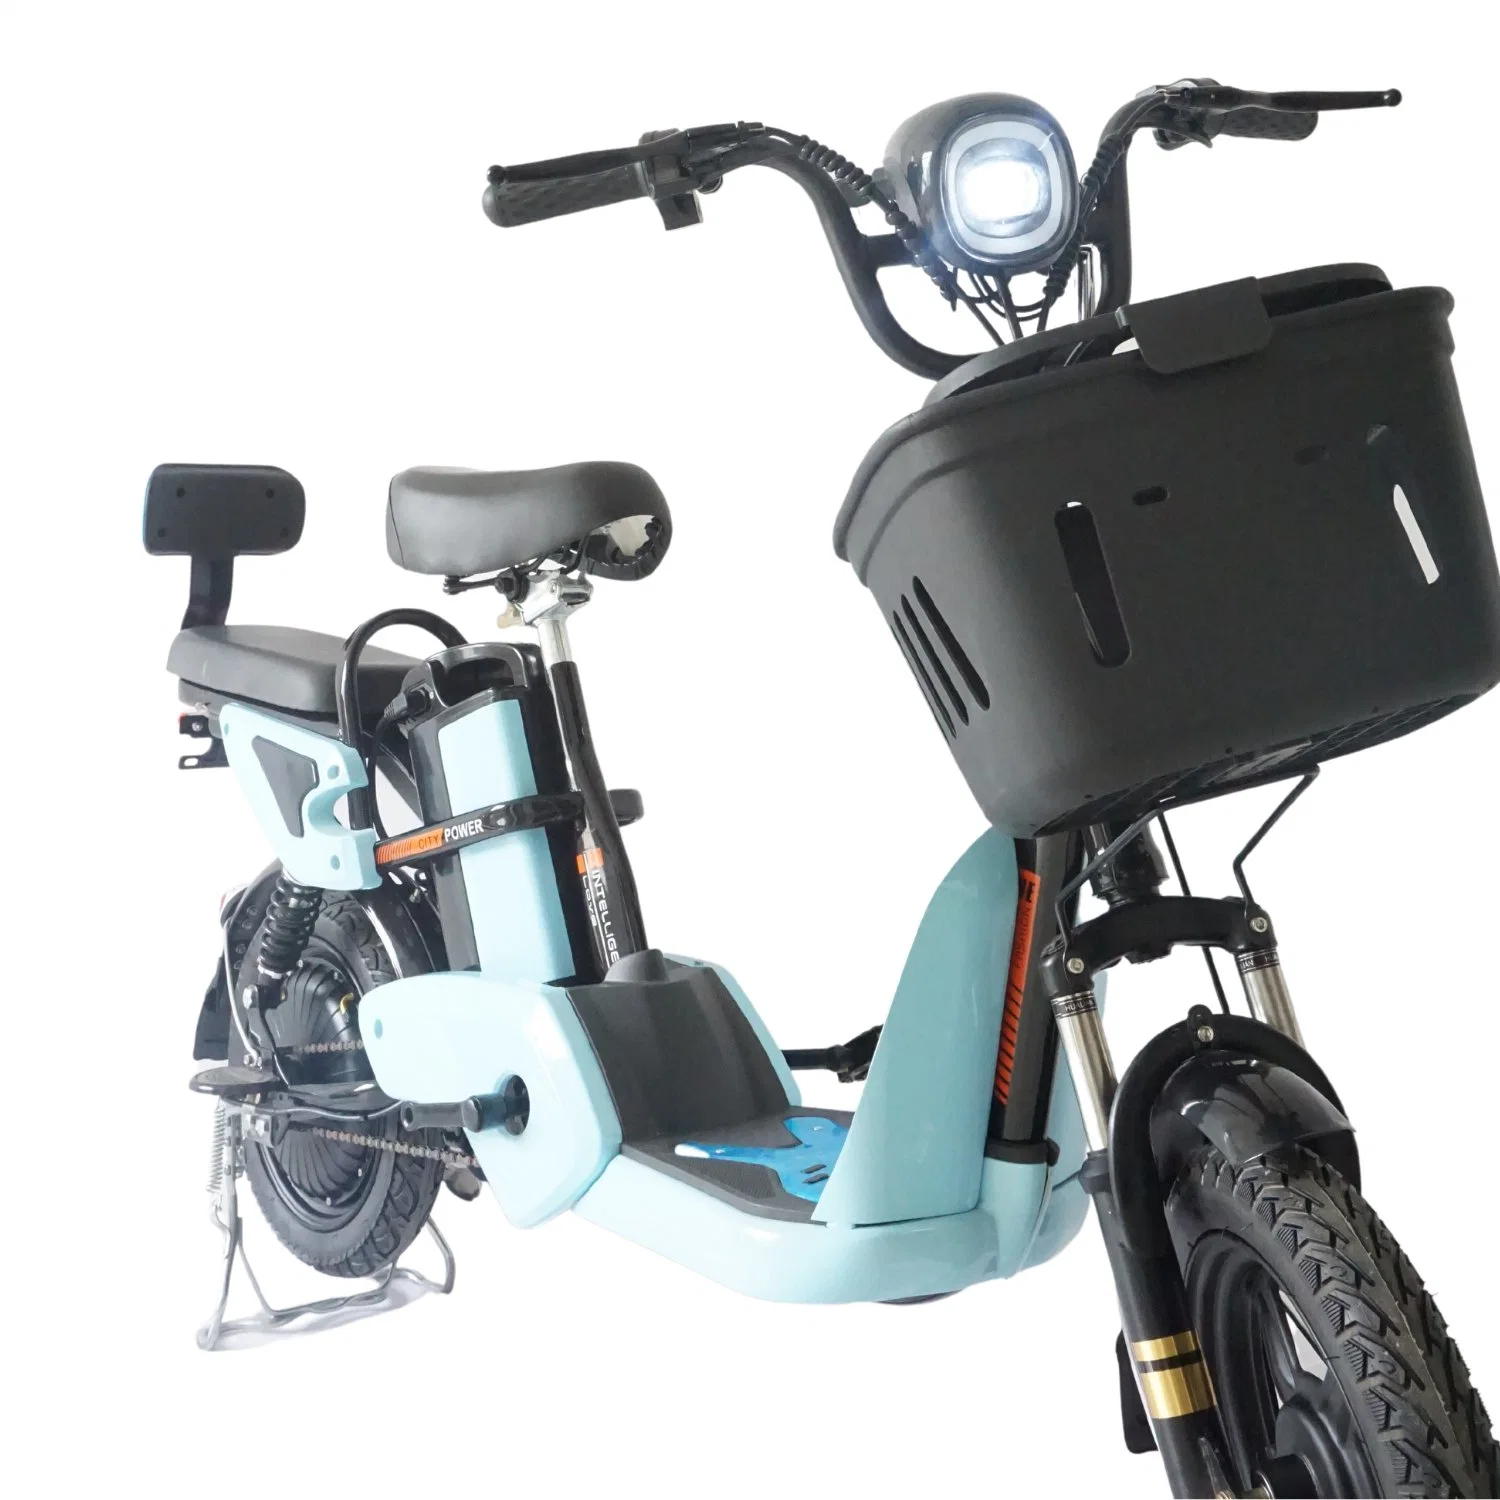 دراجة كهربائية E-Bike المدينة دراجة هوائية تنقّل الدراجة الهوائية 48V350W 12ah